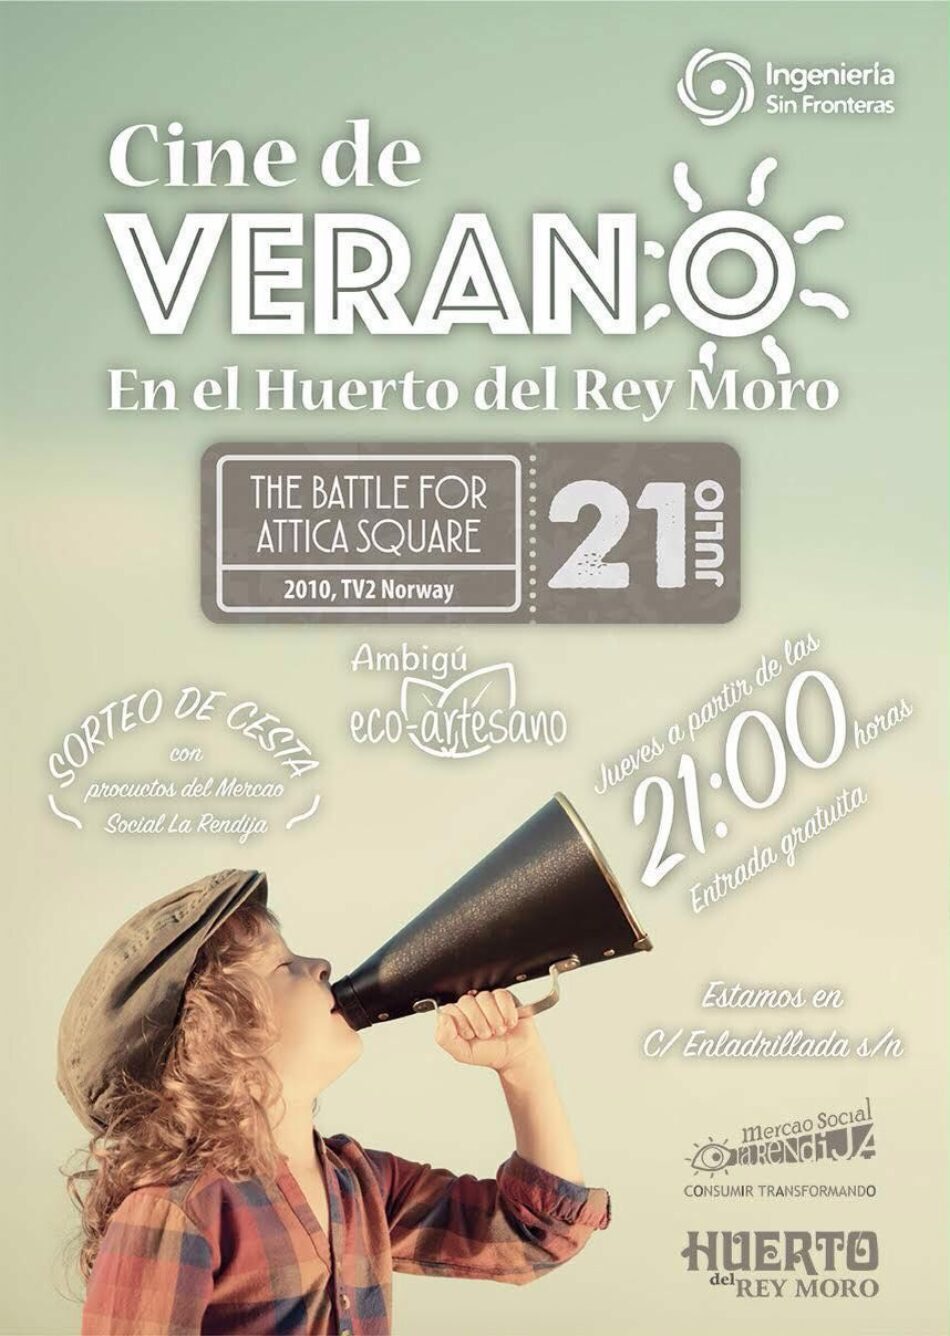 Risas Solidarias participa en el Cine de Verano en el Huerto del Rey Moro (Sevilla) este jueves